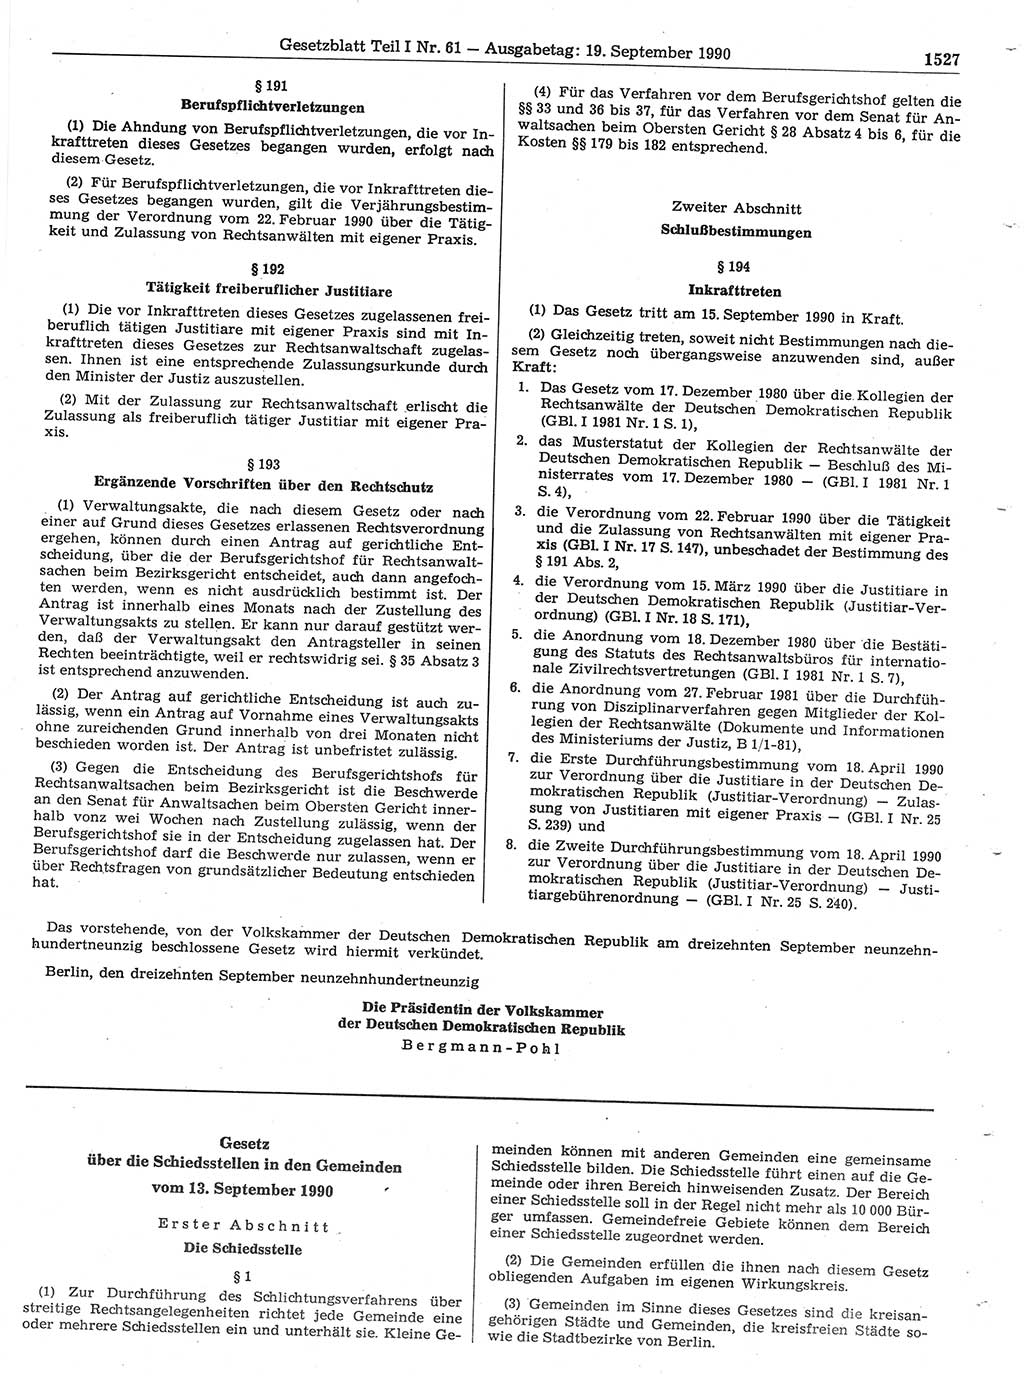 Gesetzblatt (GBl.) der Deutschen Demokratischen Republik (DDR) Teil Ⅰ 1990, Seite 1527 (GBl. DDR Ⅰ 1990, S. 1527)